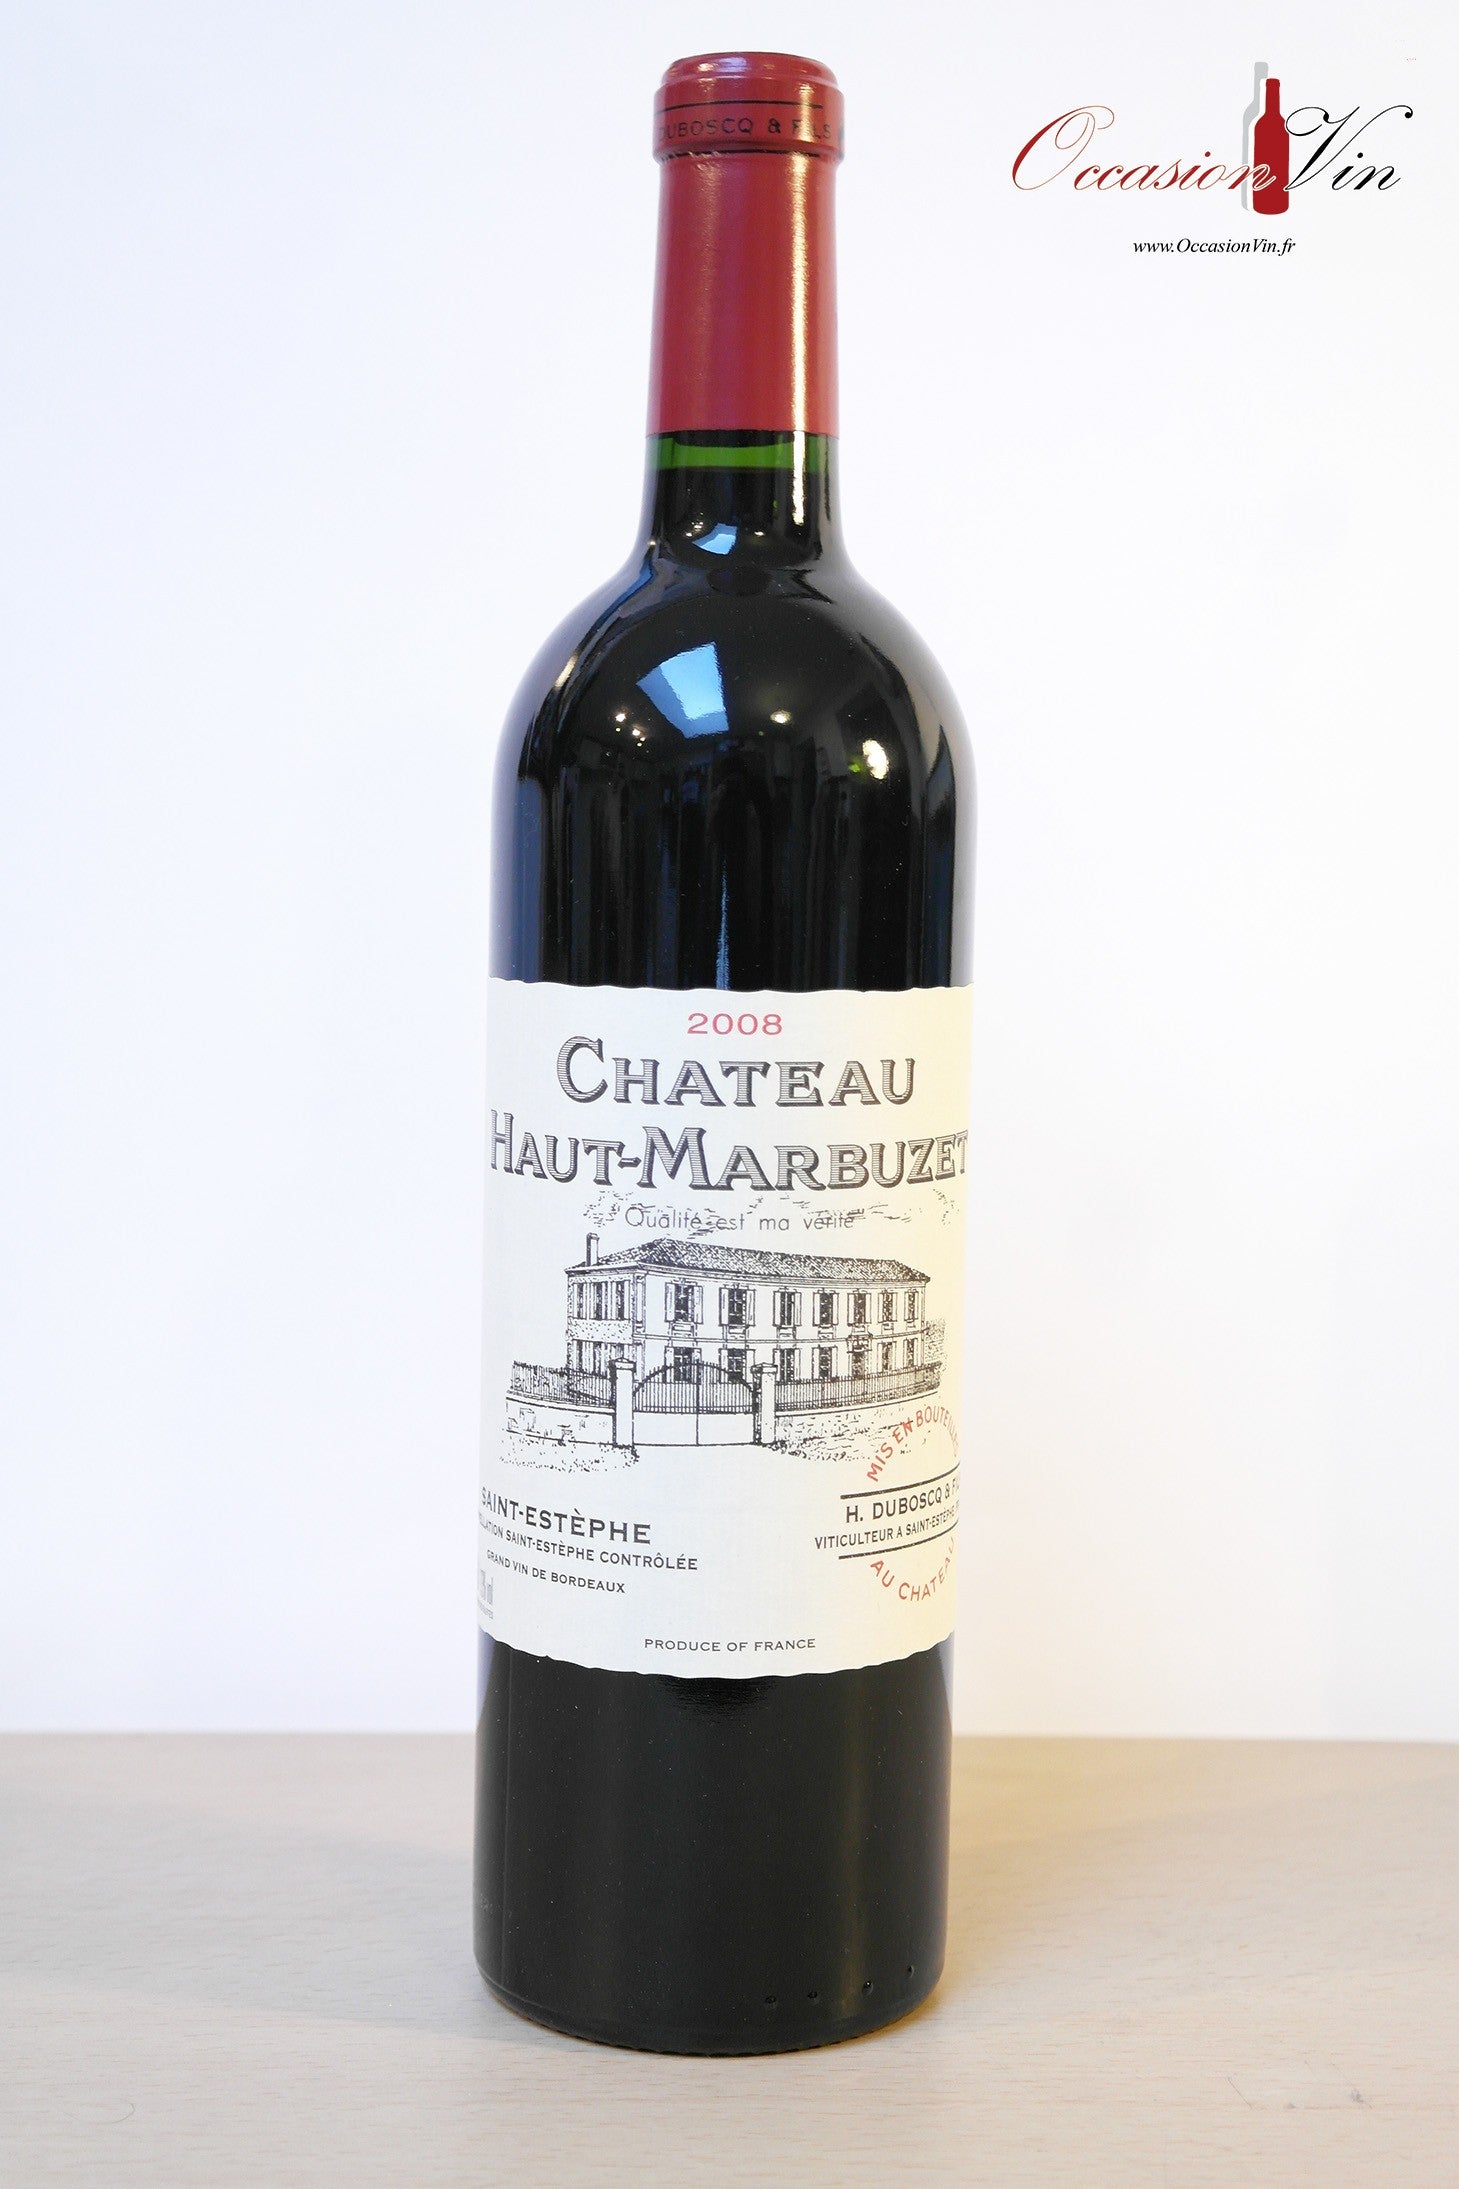 Château Haut-Marbuzet Vin 2008